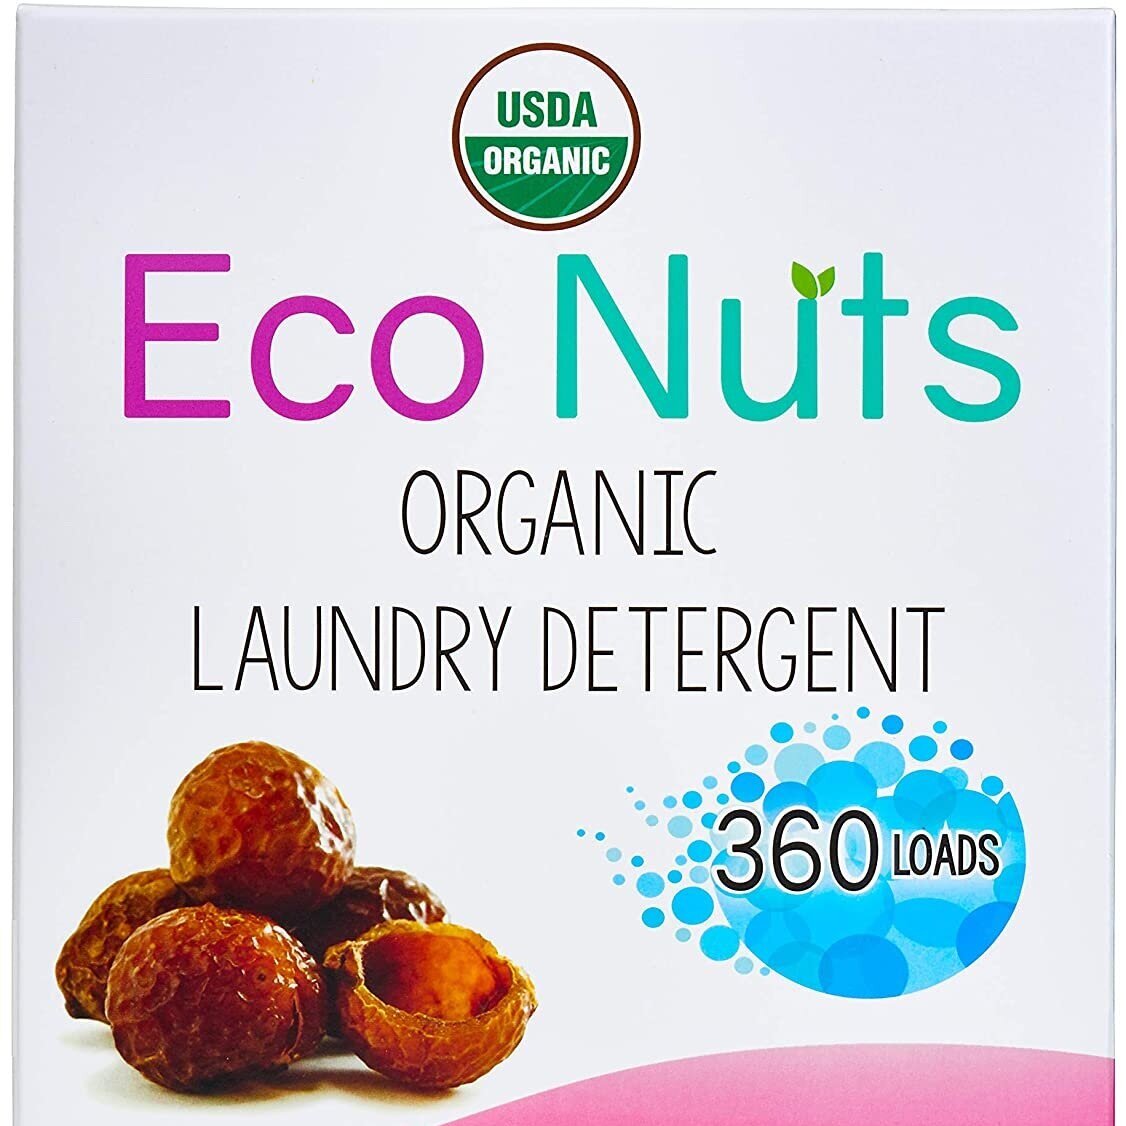 Eco Nuts